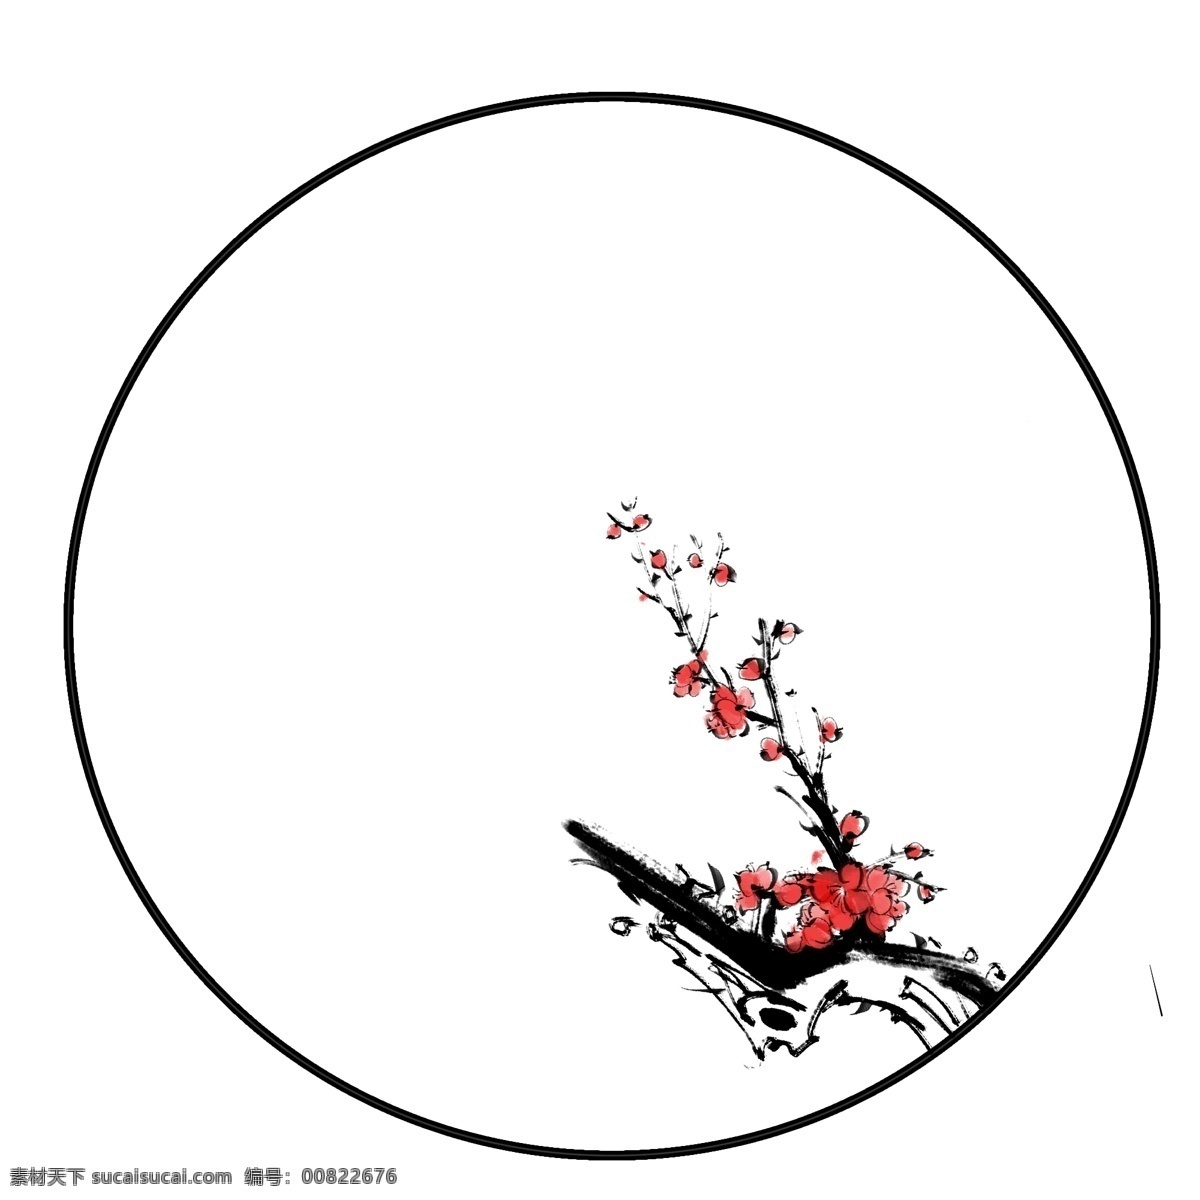 中国 风 梅花 图案 边框 红色 水墨 水墨边框 冬季 冬梅 腊梅 花卉 边框底纹